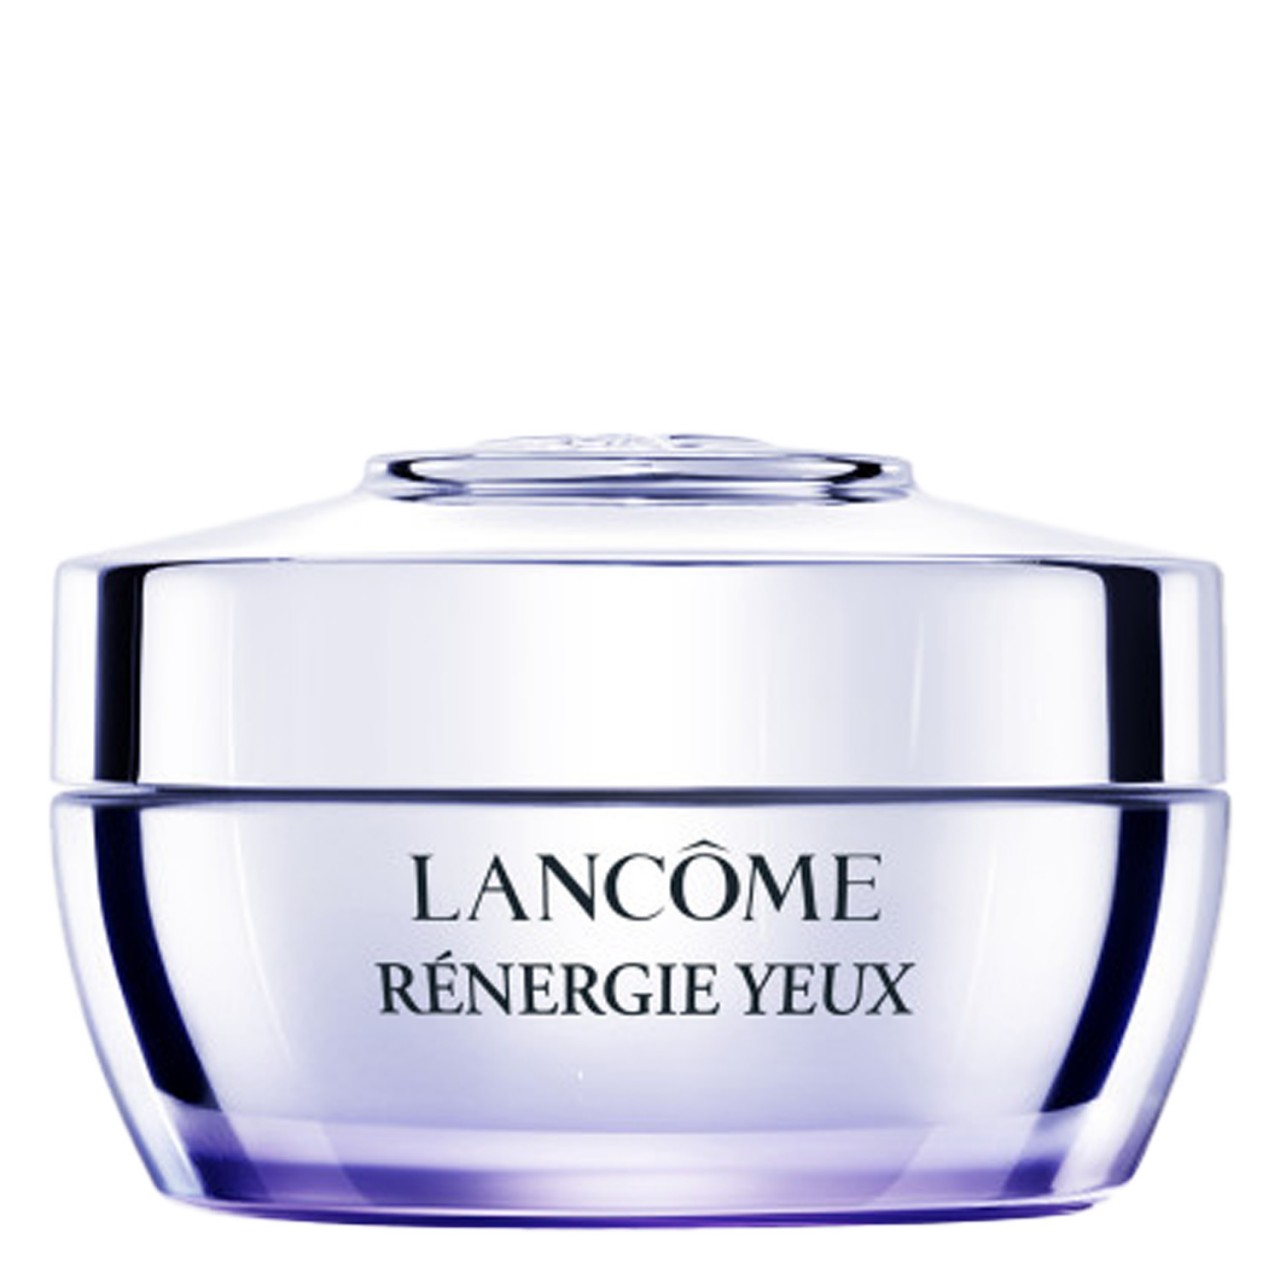 Rénergie - Eye Cream von Lancôme